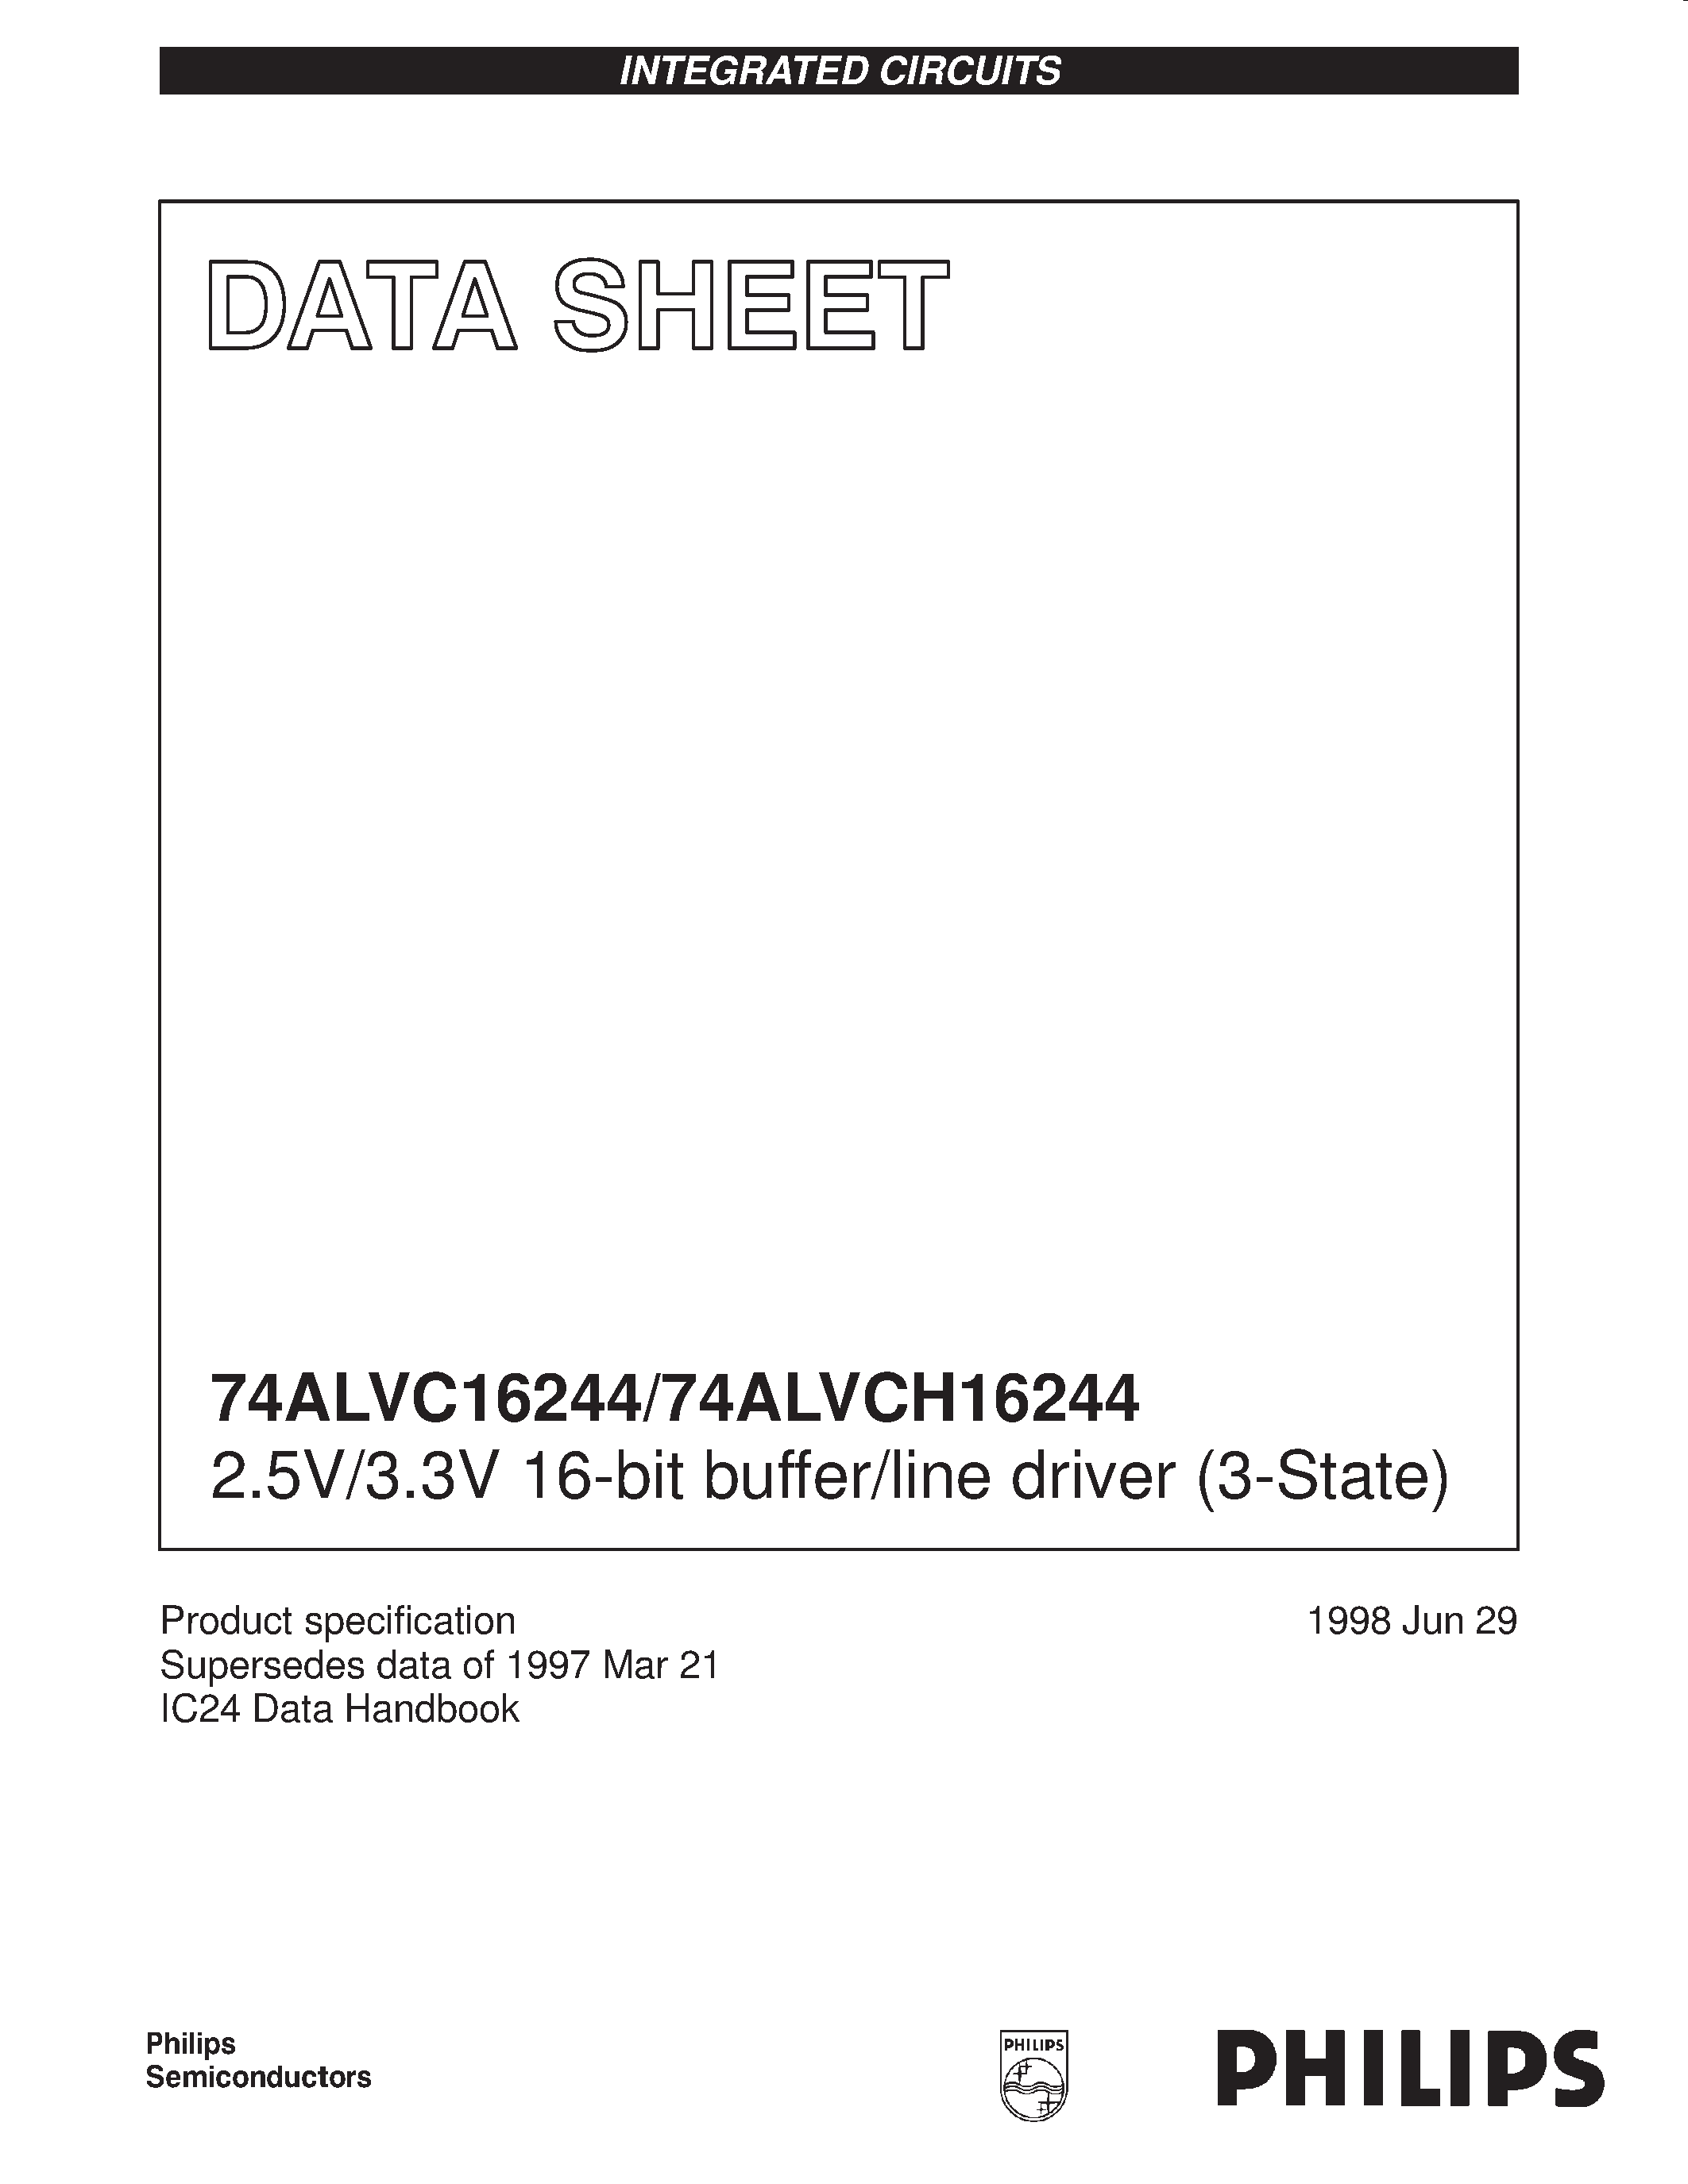 Даташит 74ALVCH16244DGG - 2.5V/3.3V 16-bit buffer/line driver 3-State страница 1